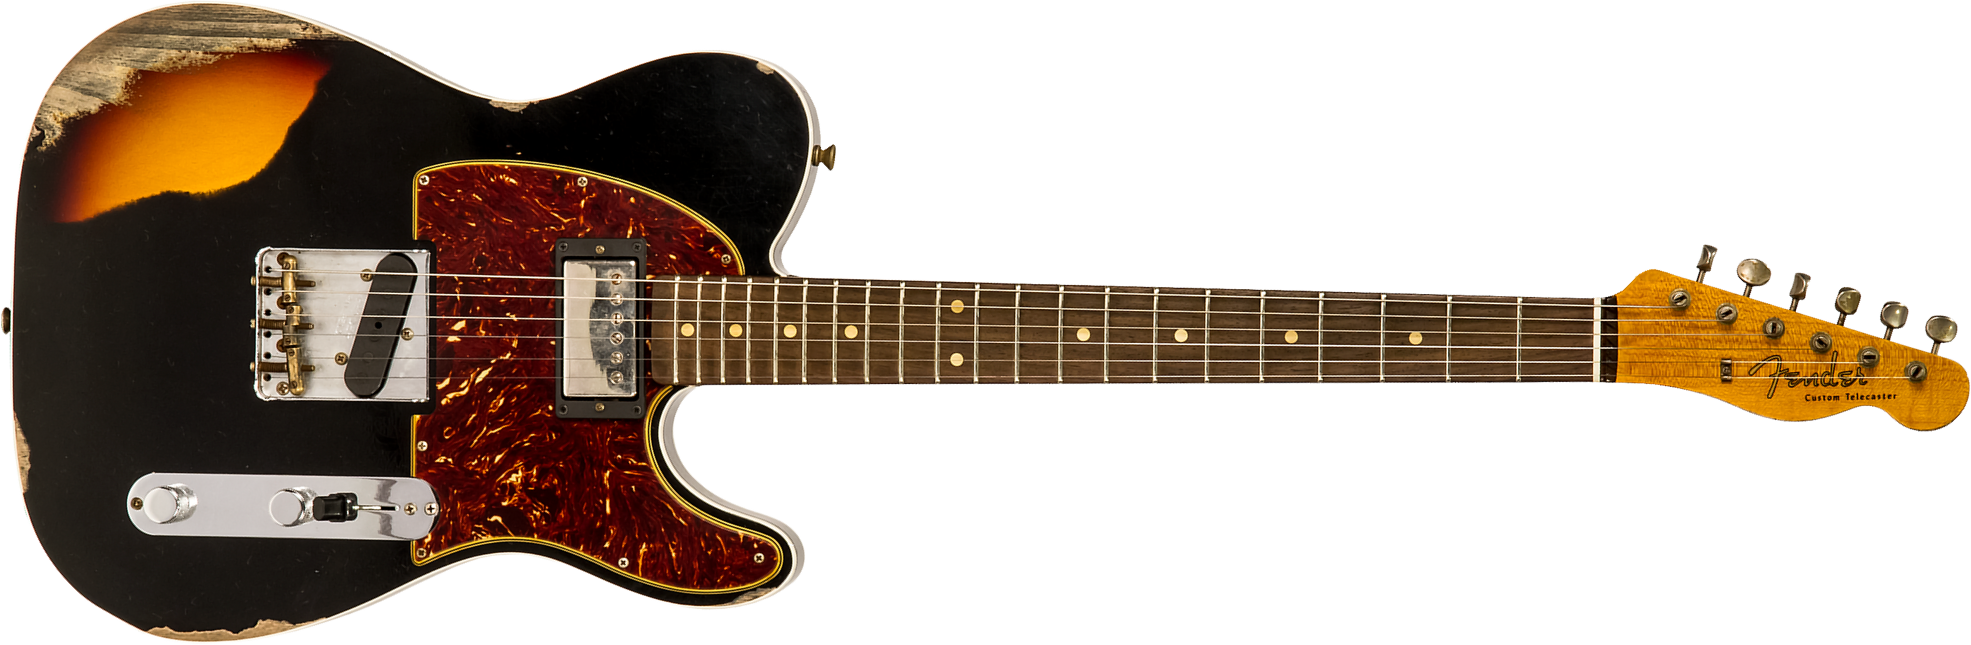 Fender Custom Shop Tele Custom 1960 Sh Ltd Hs Ht Rw #cz549784 - Heavy Relic Black Over 3-color Sunburst - Guitare Électrique Forme Tel - Main picture